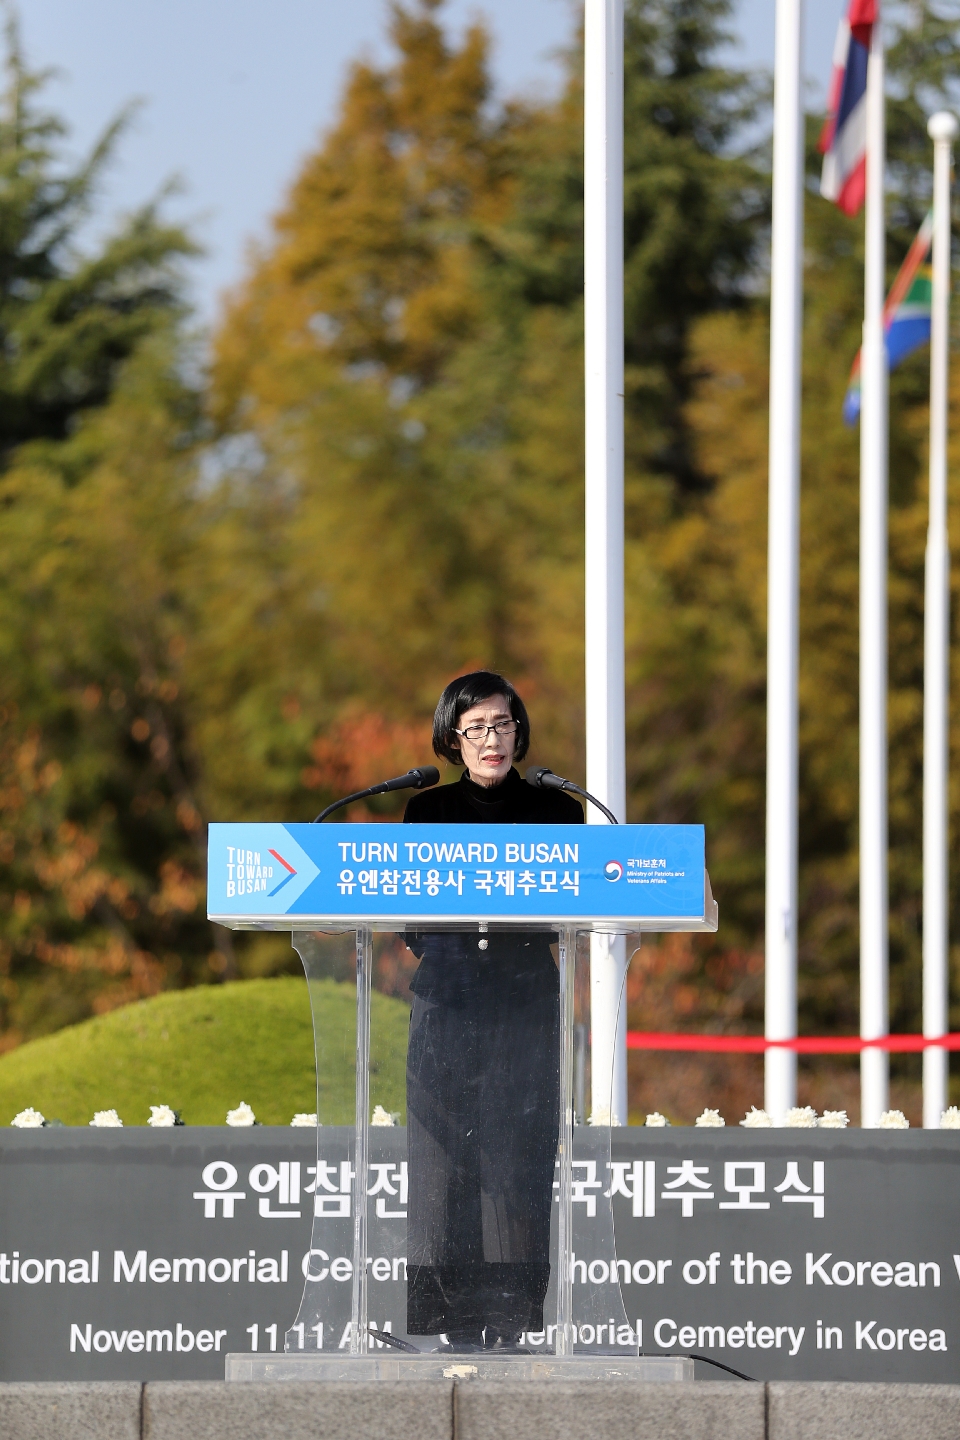 피우진 국가보훈처장이 11일 부산유엔기념공원에서 열린 턴투워드부산 유엔참전용사 국제추모식에 참석해 추모사를 하고 있다.